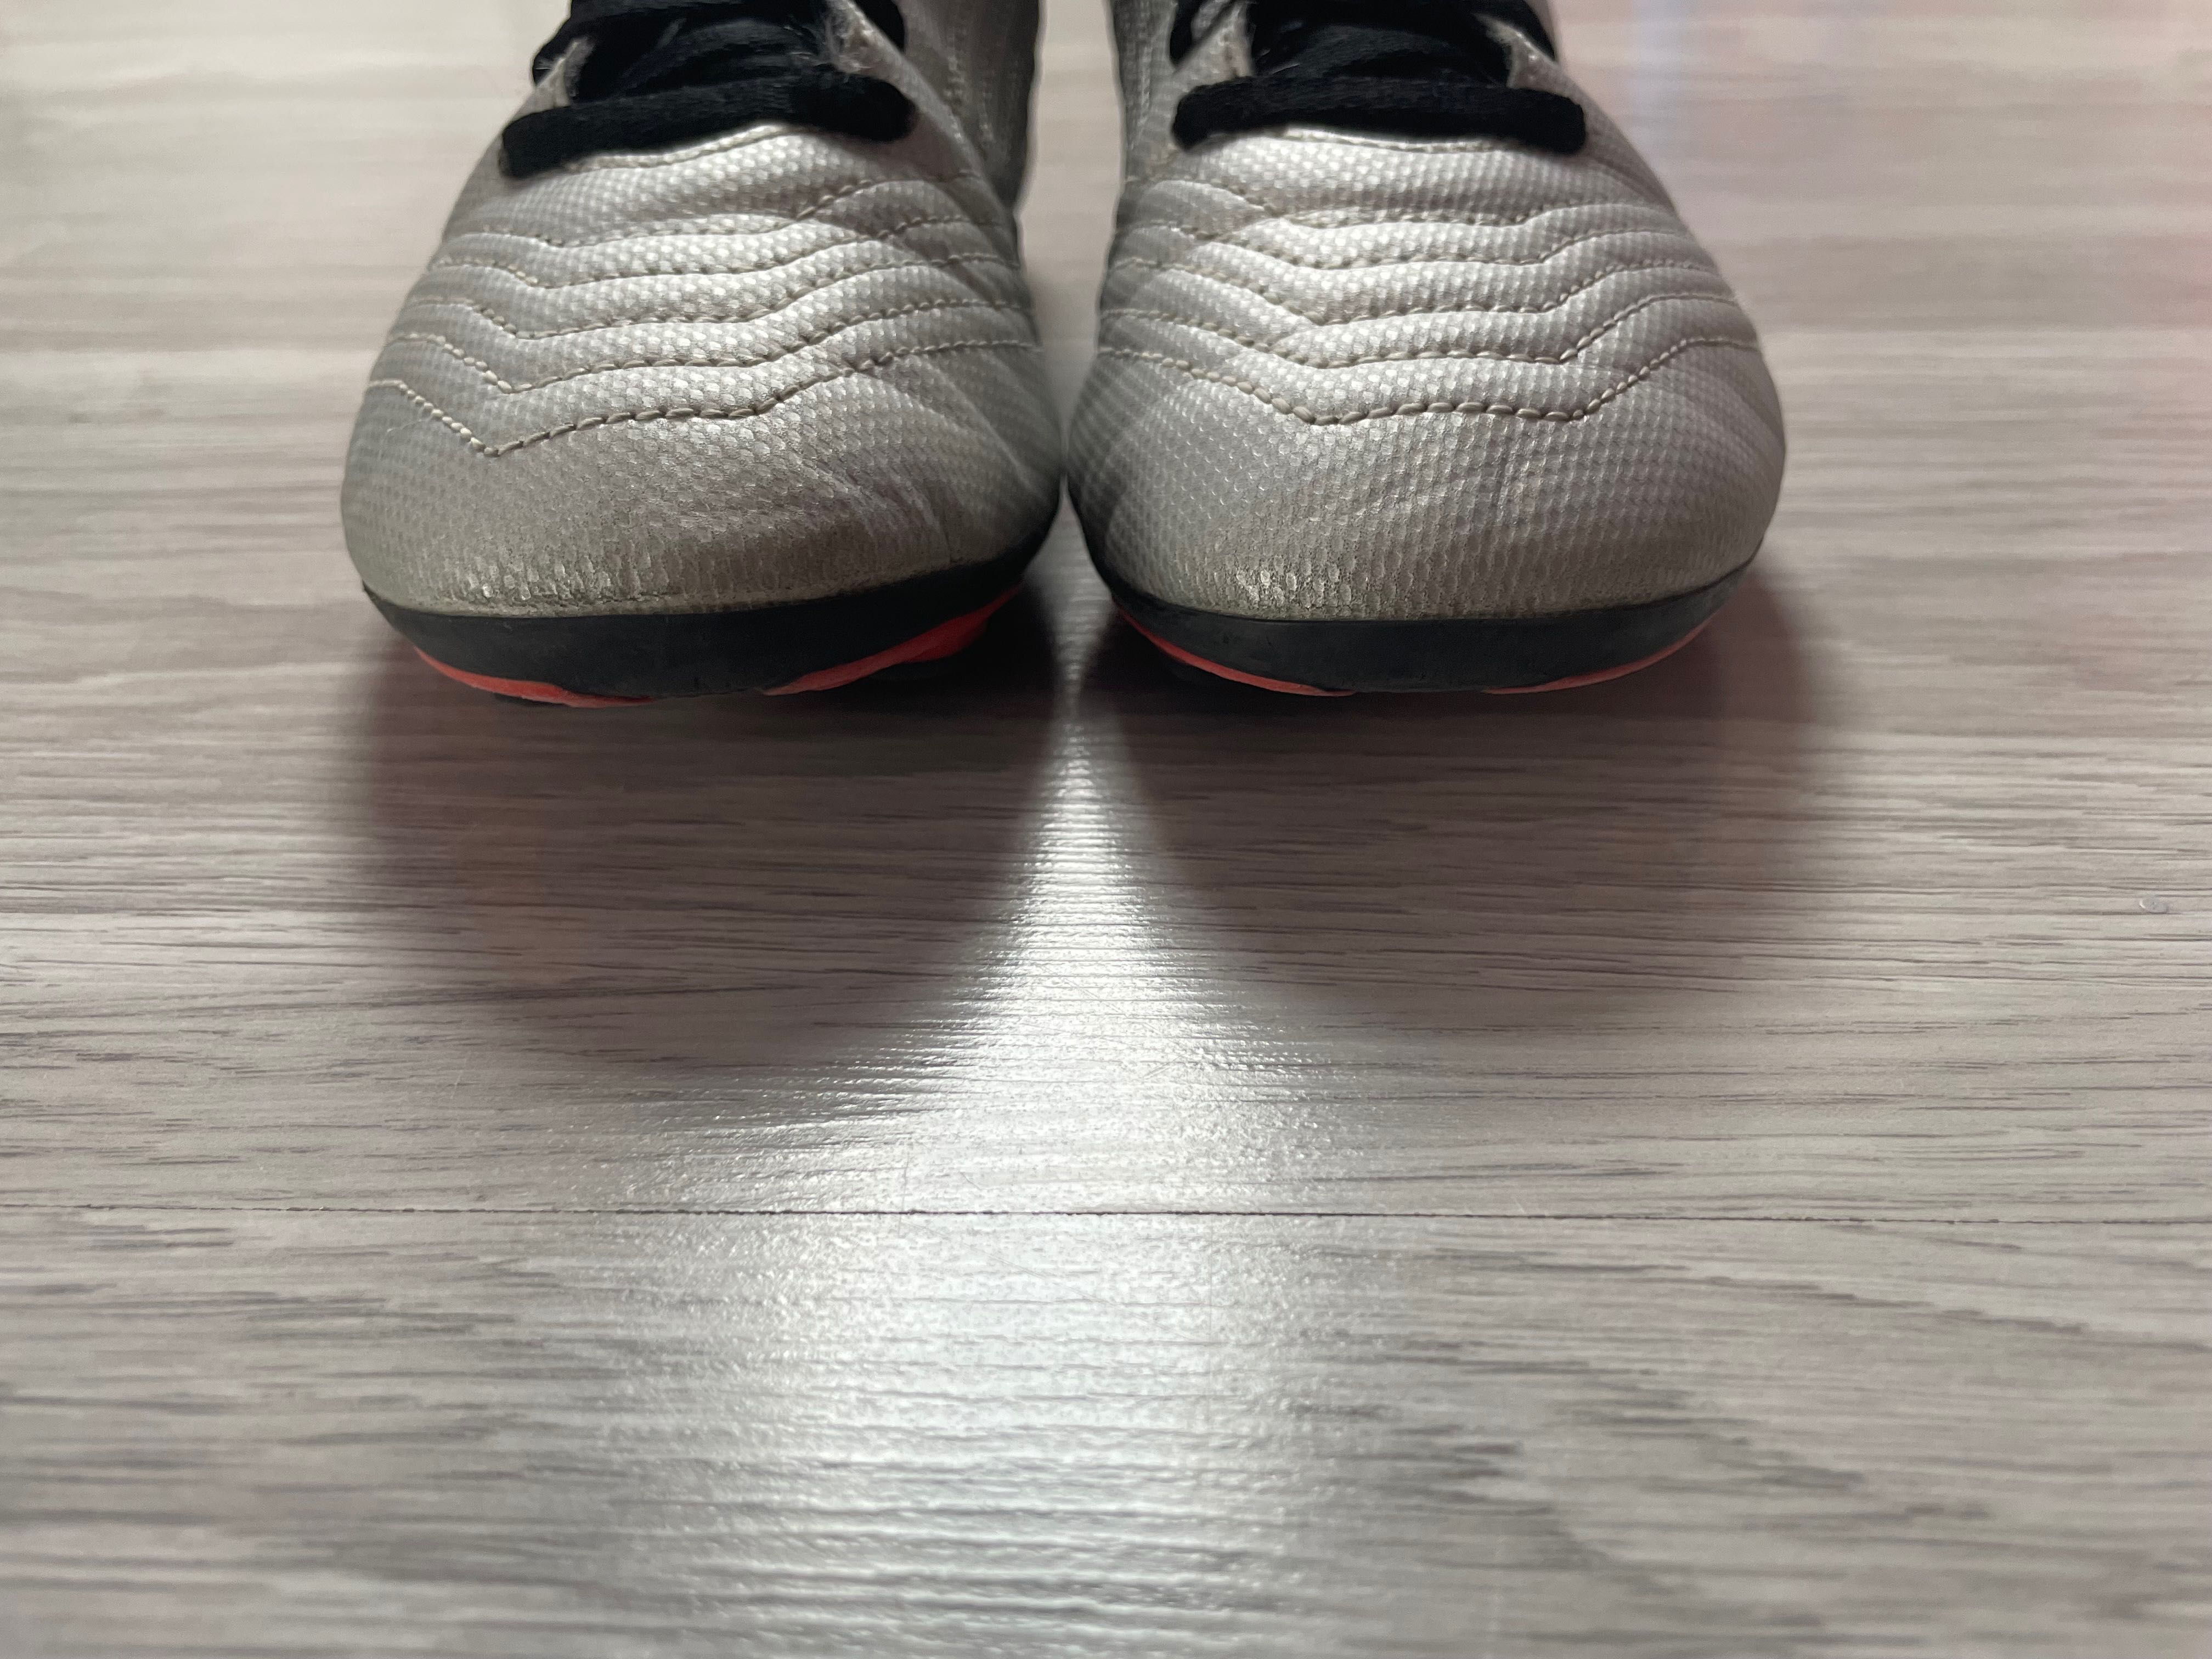 Korki buty piłkarskie Adidas Predator 19.4 rozmiar 35